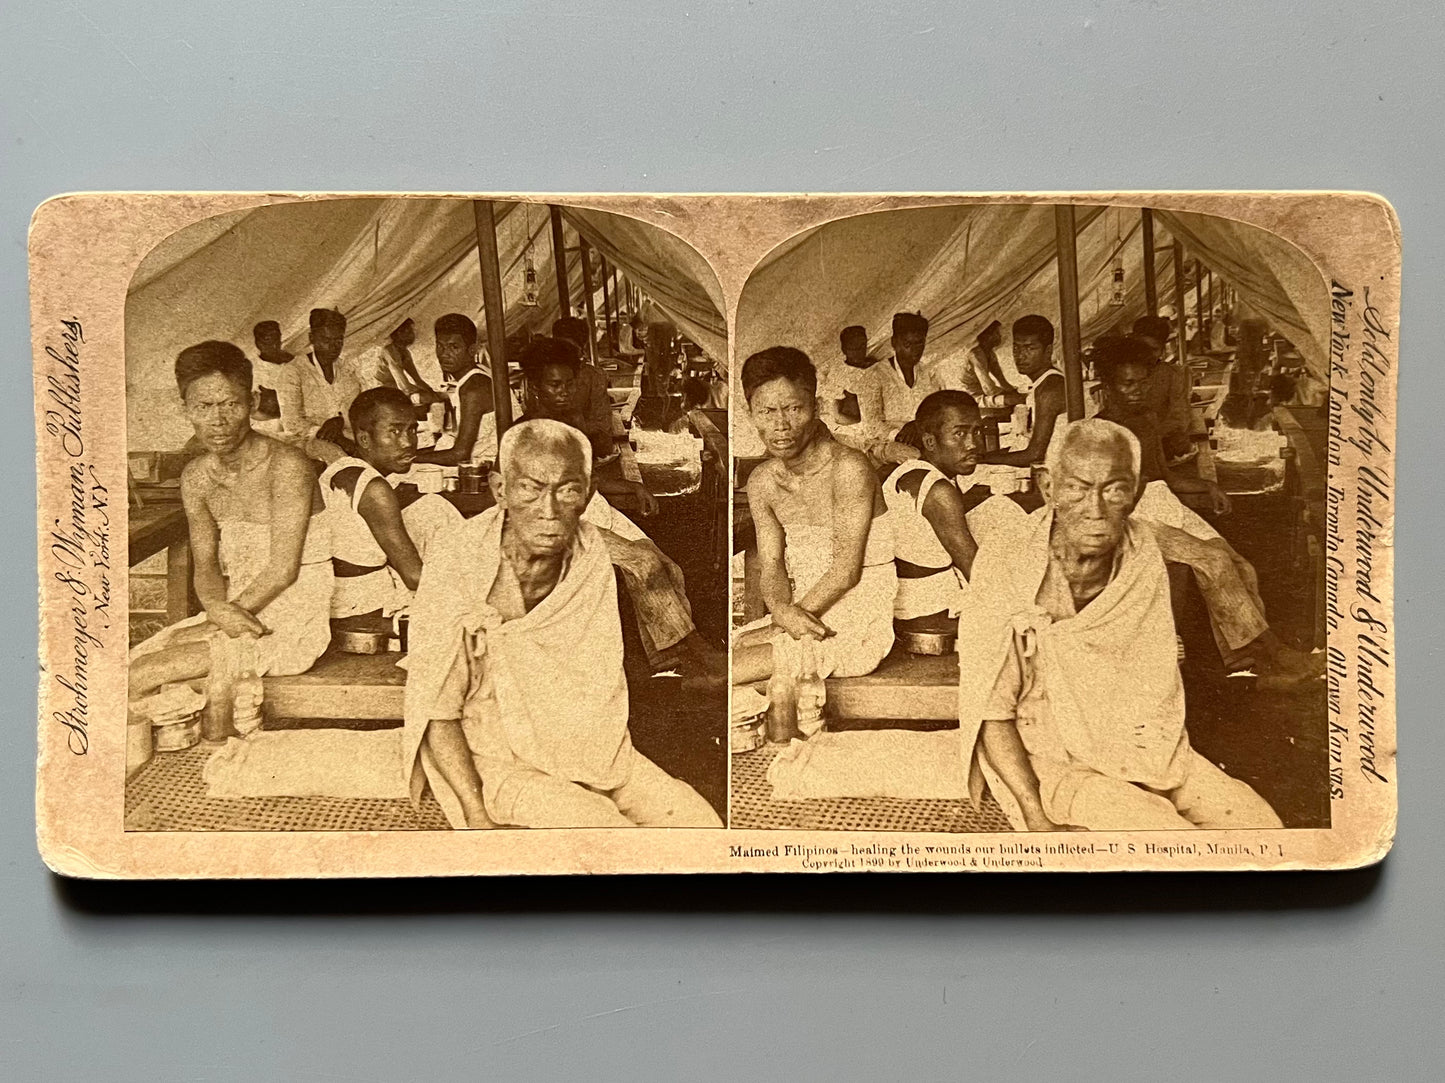 Hospital de Manila, filipinos curándose las heridas, fotografía estereoscópica bélica - Strohmeyer & Wyman Publishers, ca. 1899